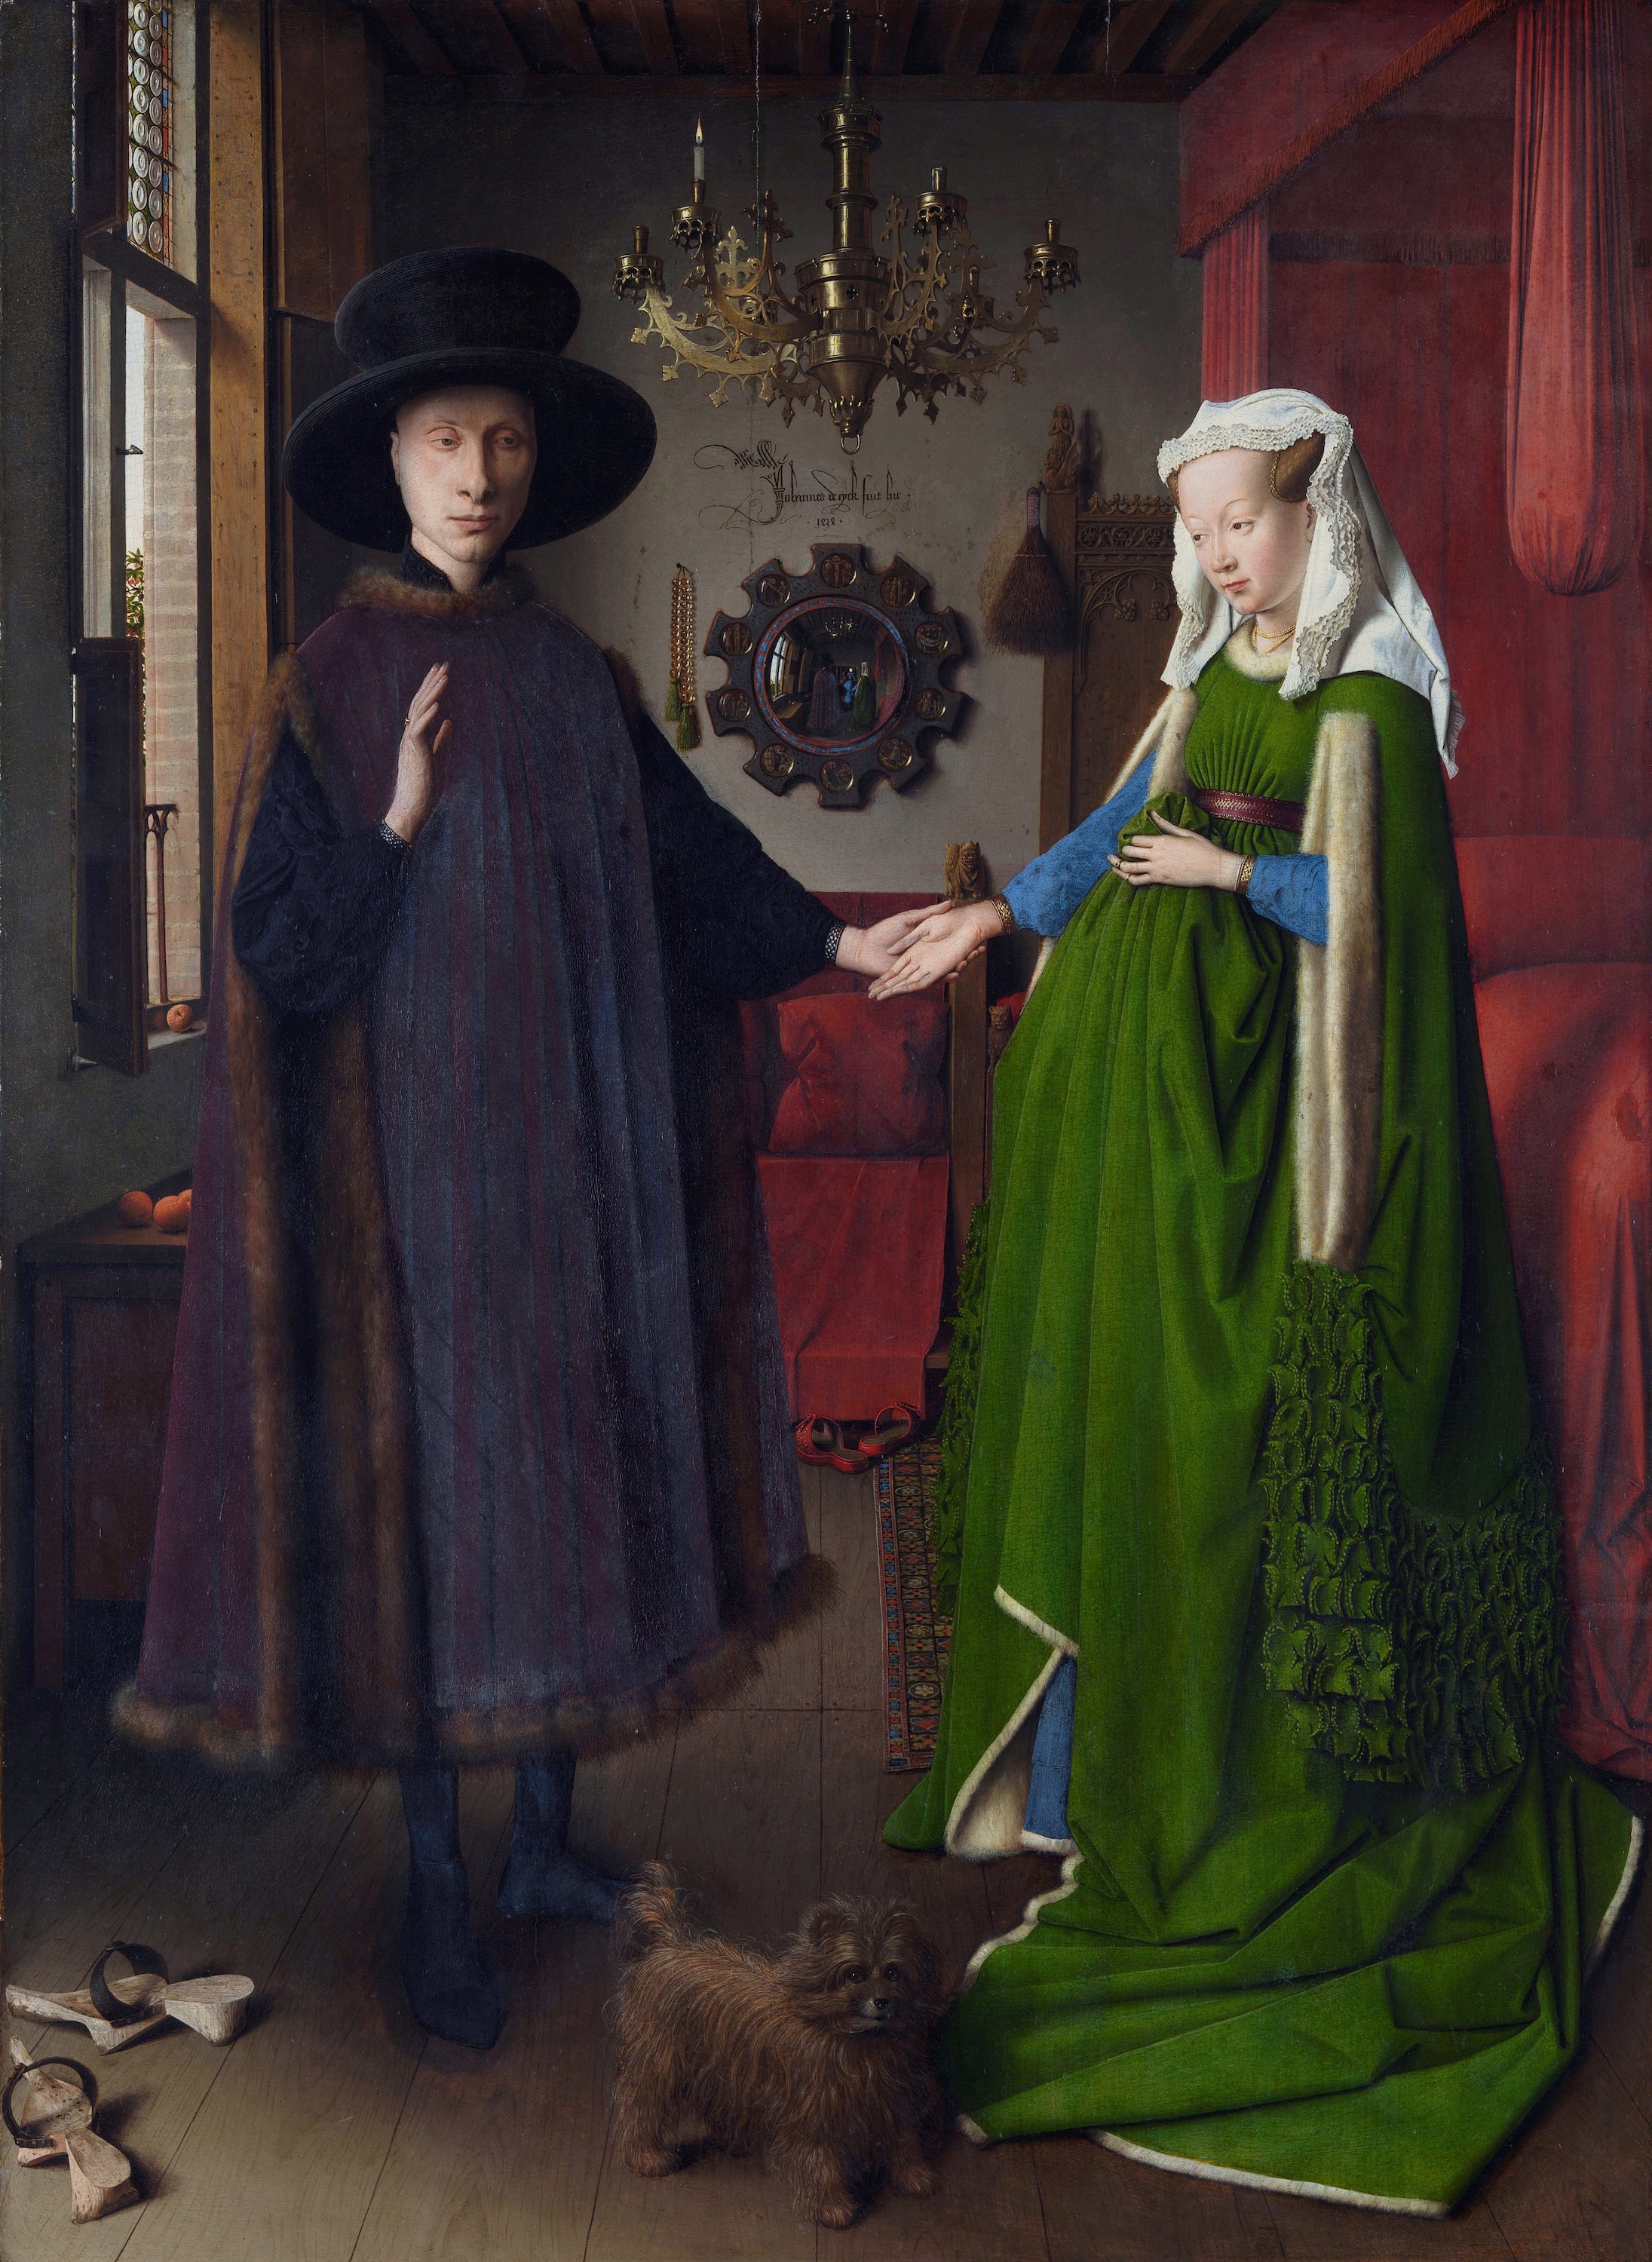 Portret małżonków Arnolfinich by Jan van Eyck - 1434 - 82 x 60 cm 